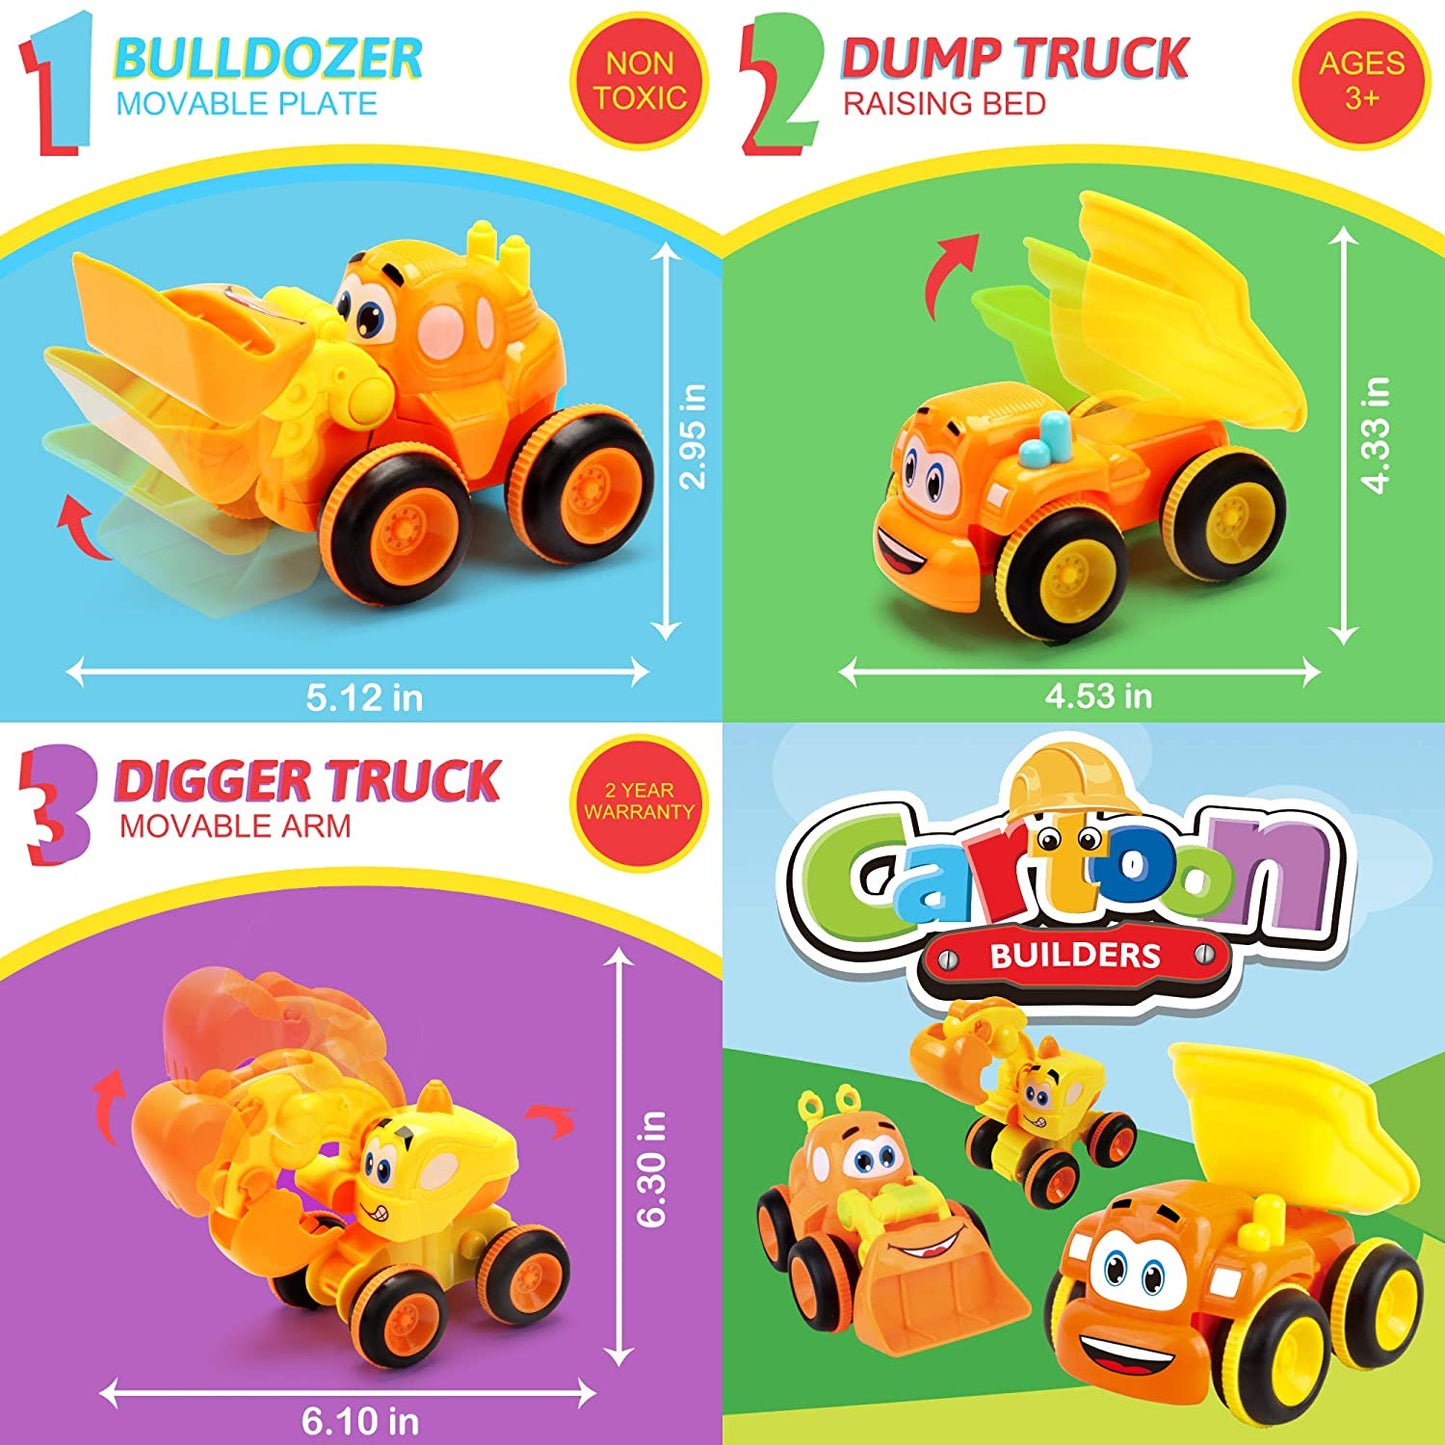 3 camiones motorizados por fricción para niños mayores de 2 años